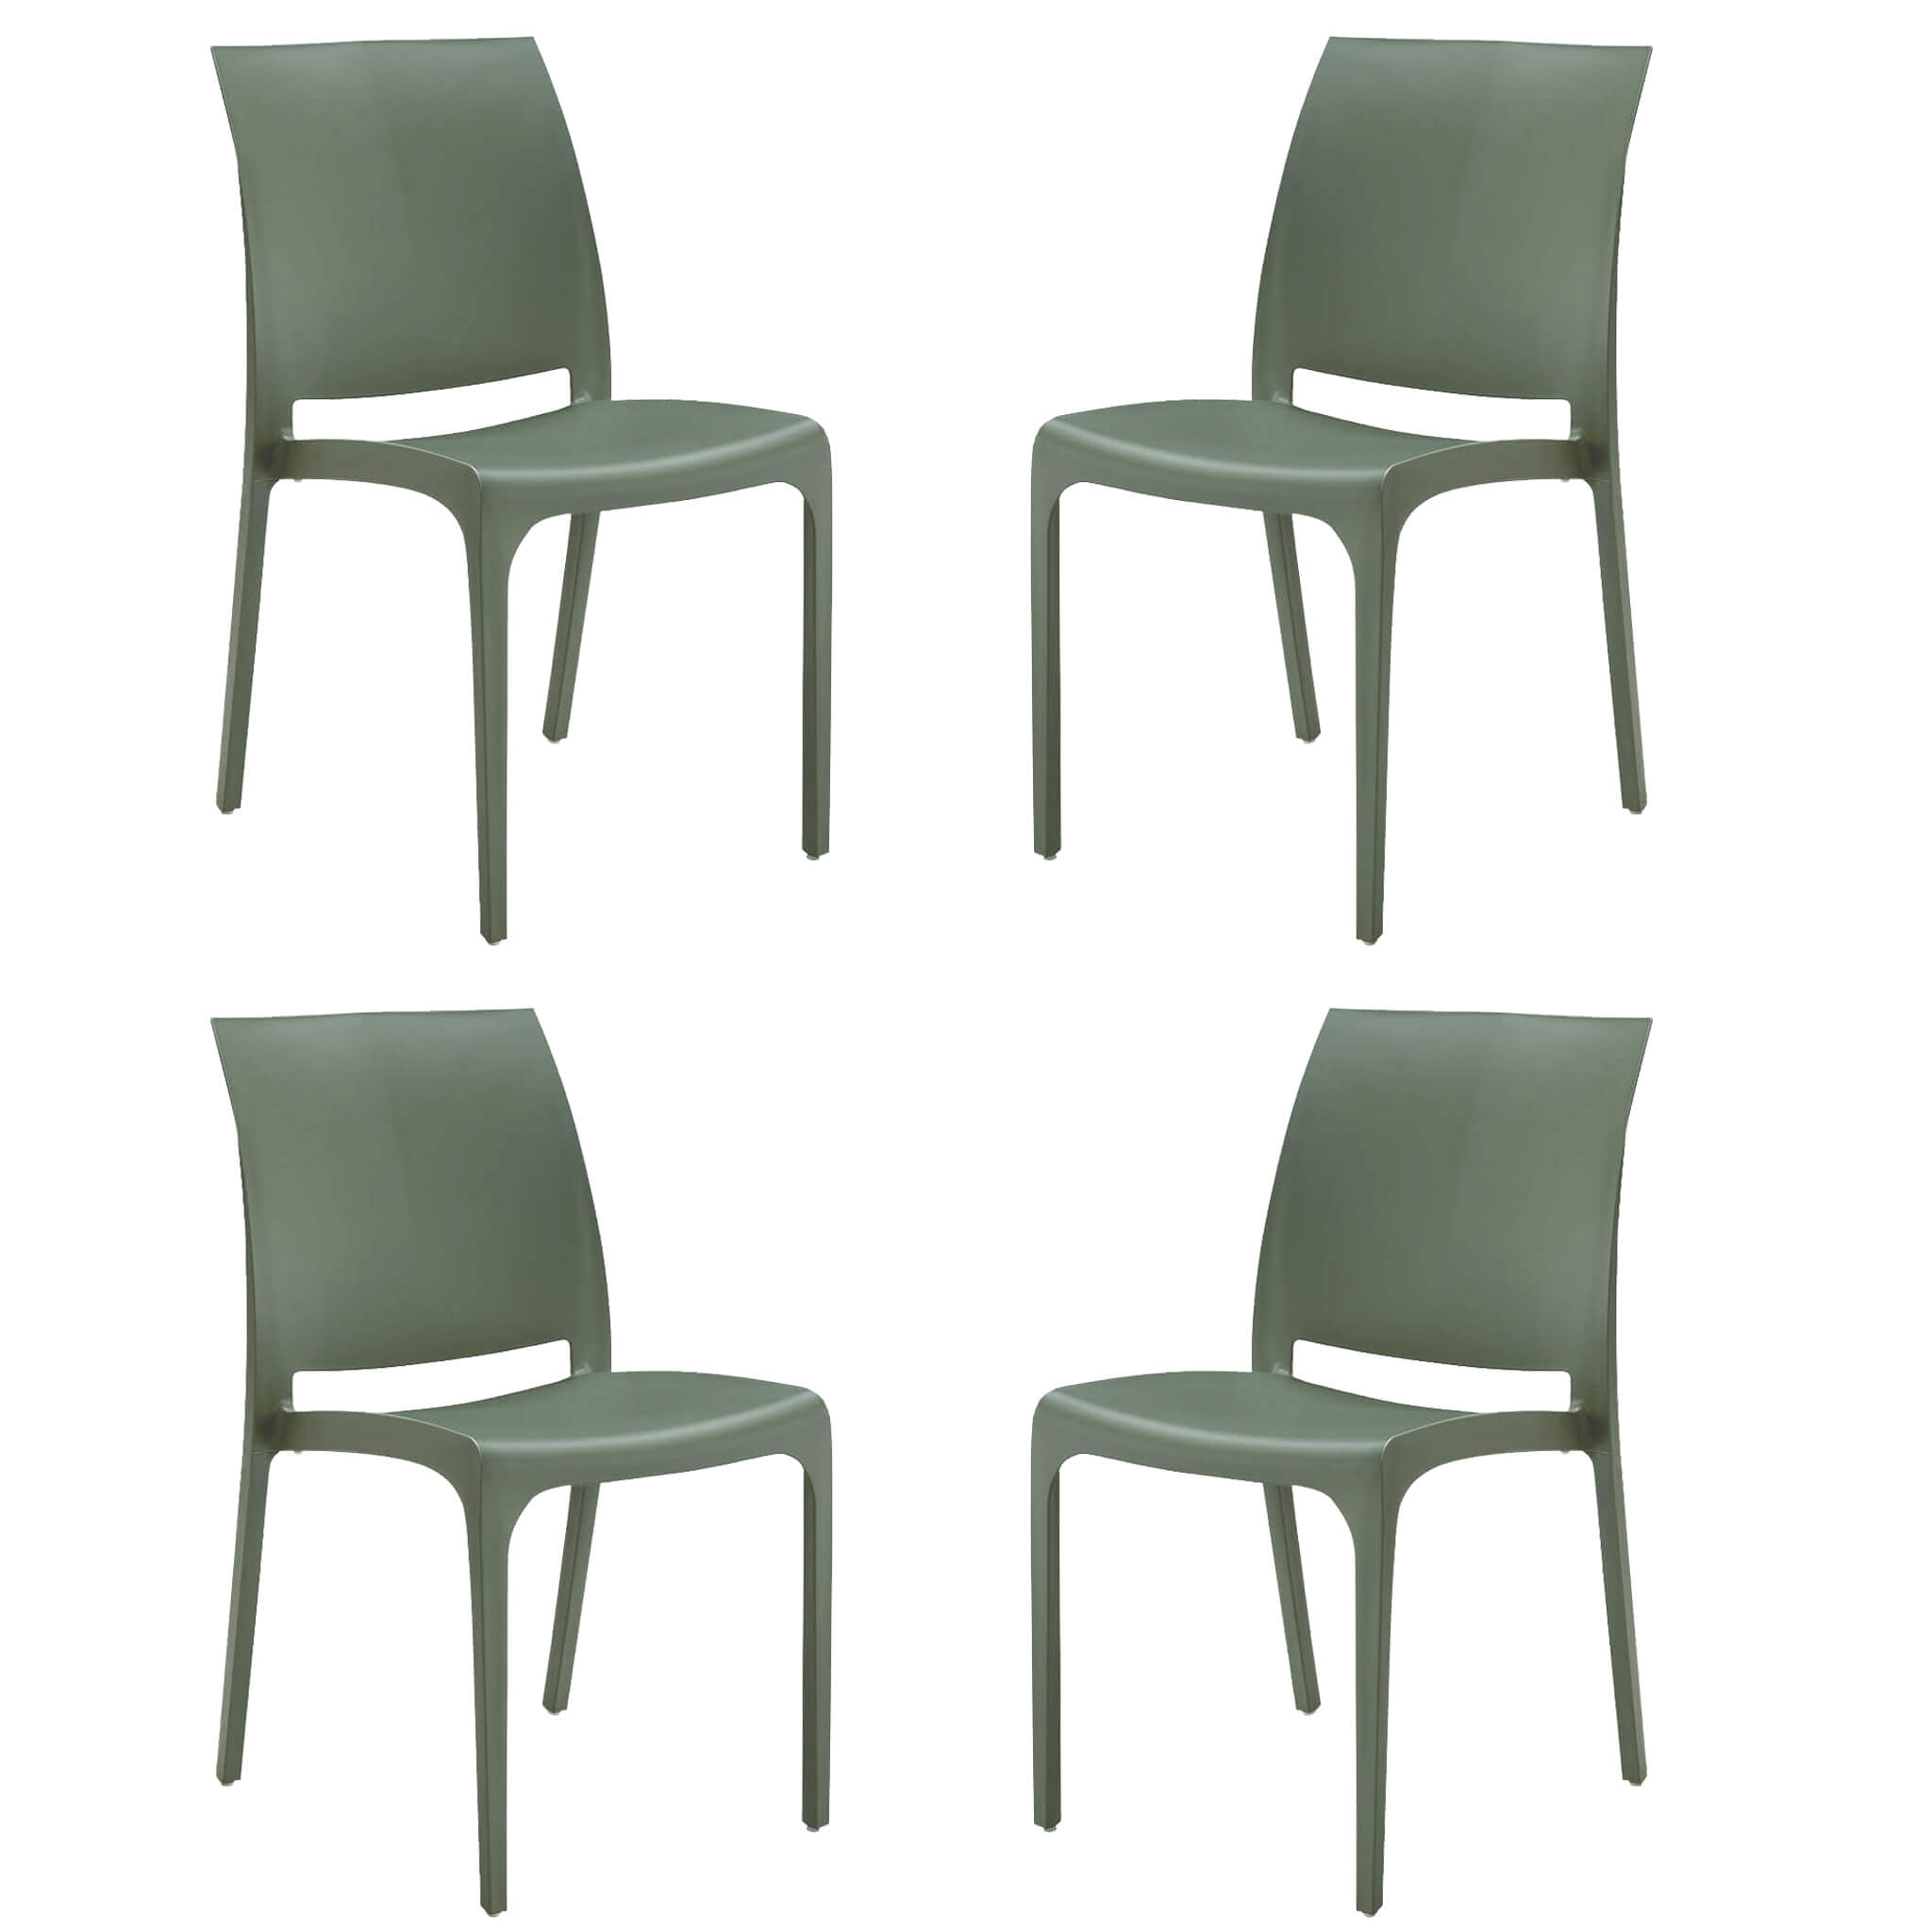 Milani Home set di 4 sedie poltrone da giardino in plastica design moderno colorata Verde Verde 46 x 80 x 54 cm